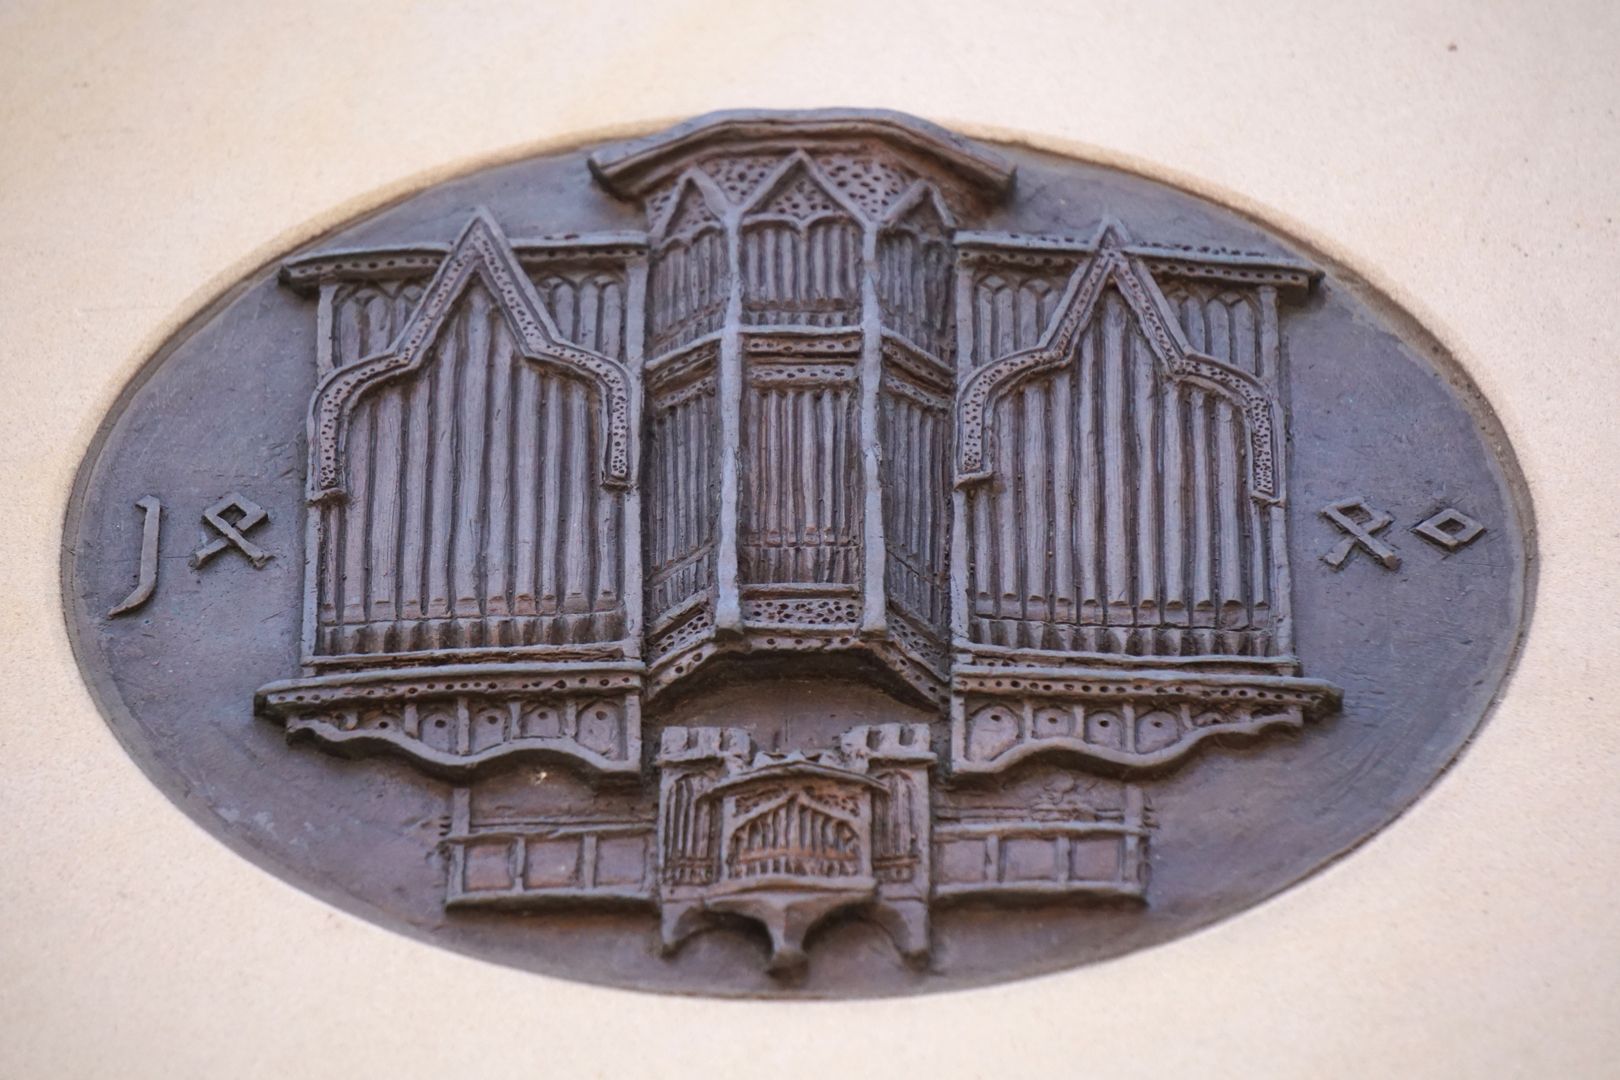 Pachelbel-Gedenktafel Darstellung der Traxdorf-Orgel, Schrägsicht von unten